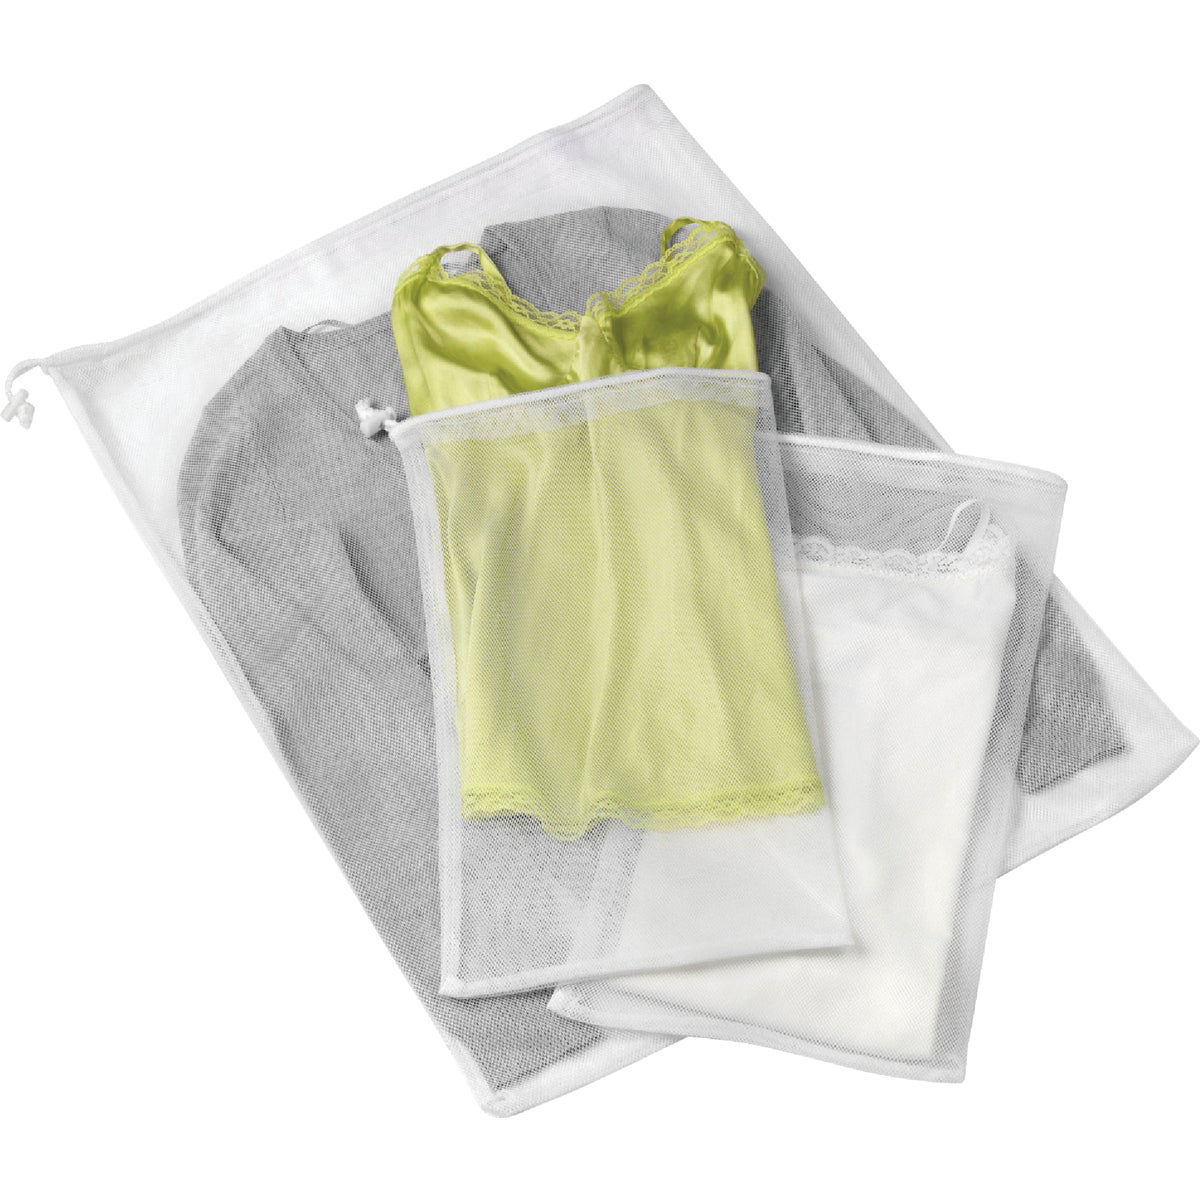 Whitmor Mesh Laundry Bags (3-Pack)